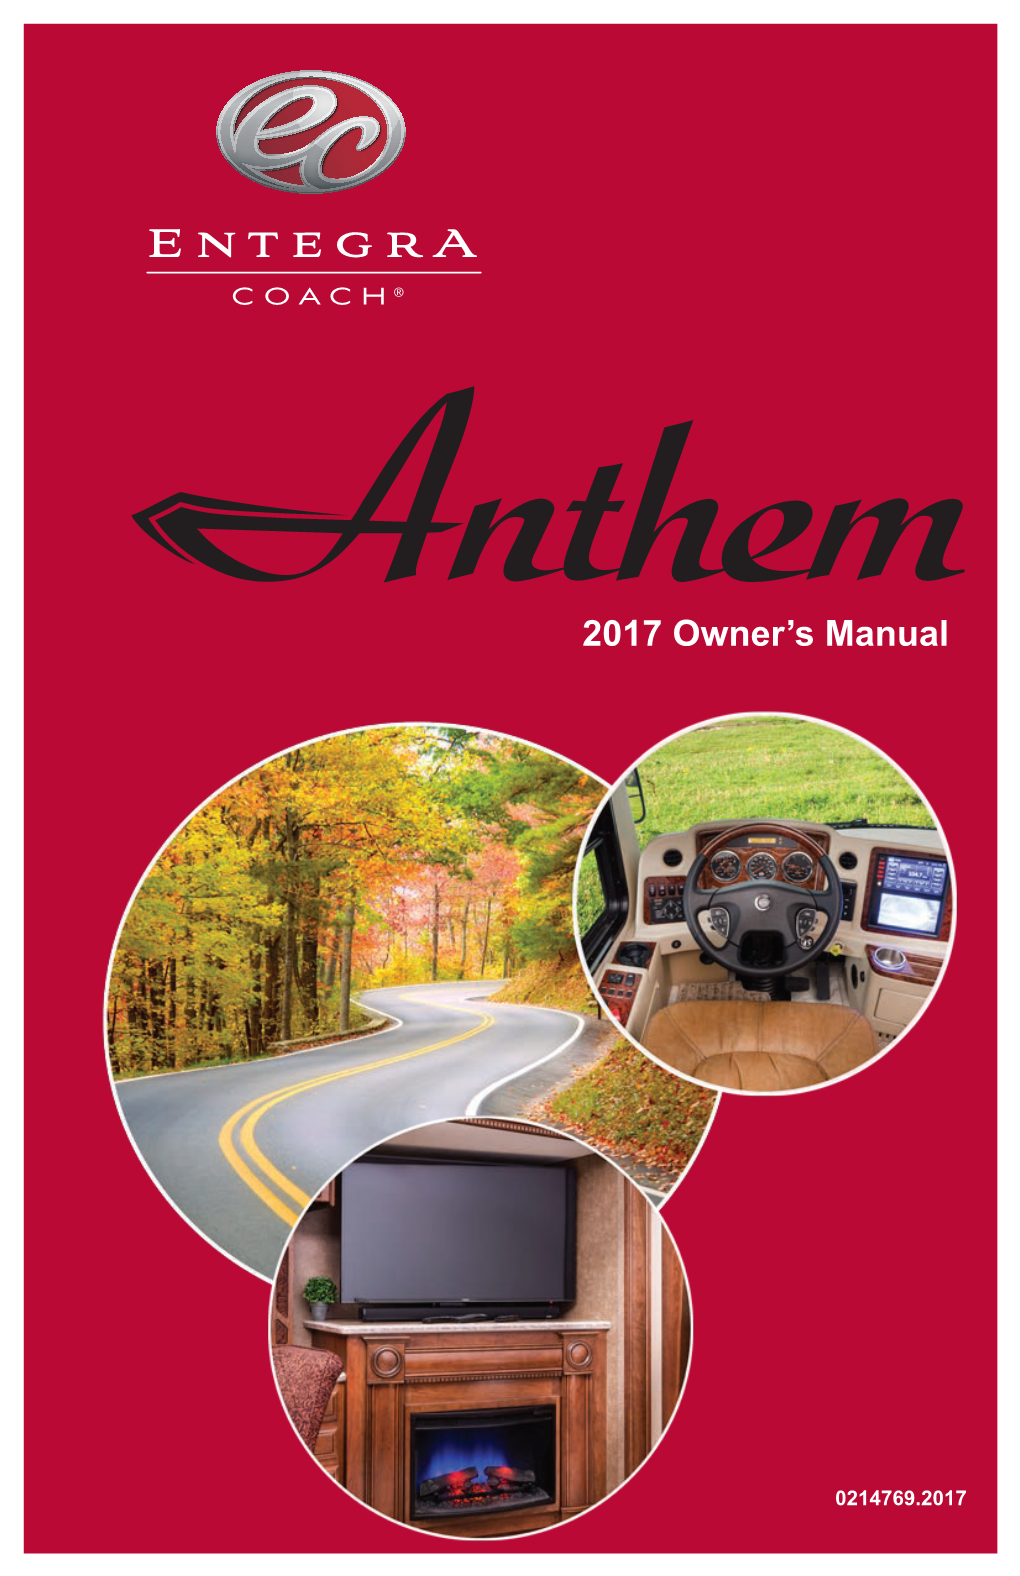 2017 Owner's Manual